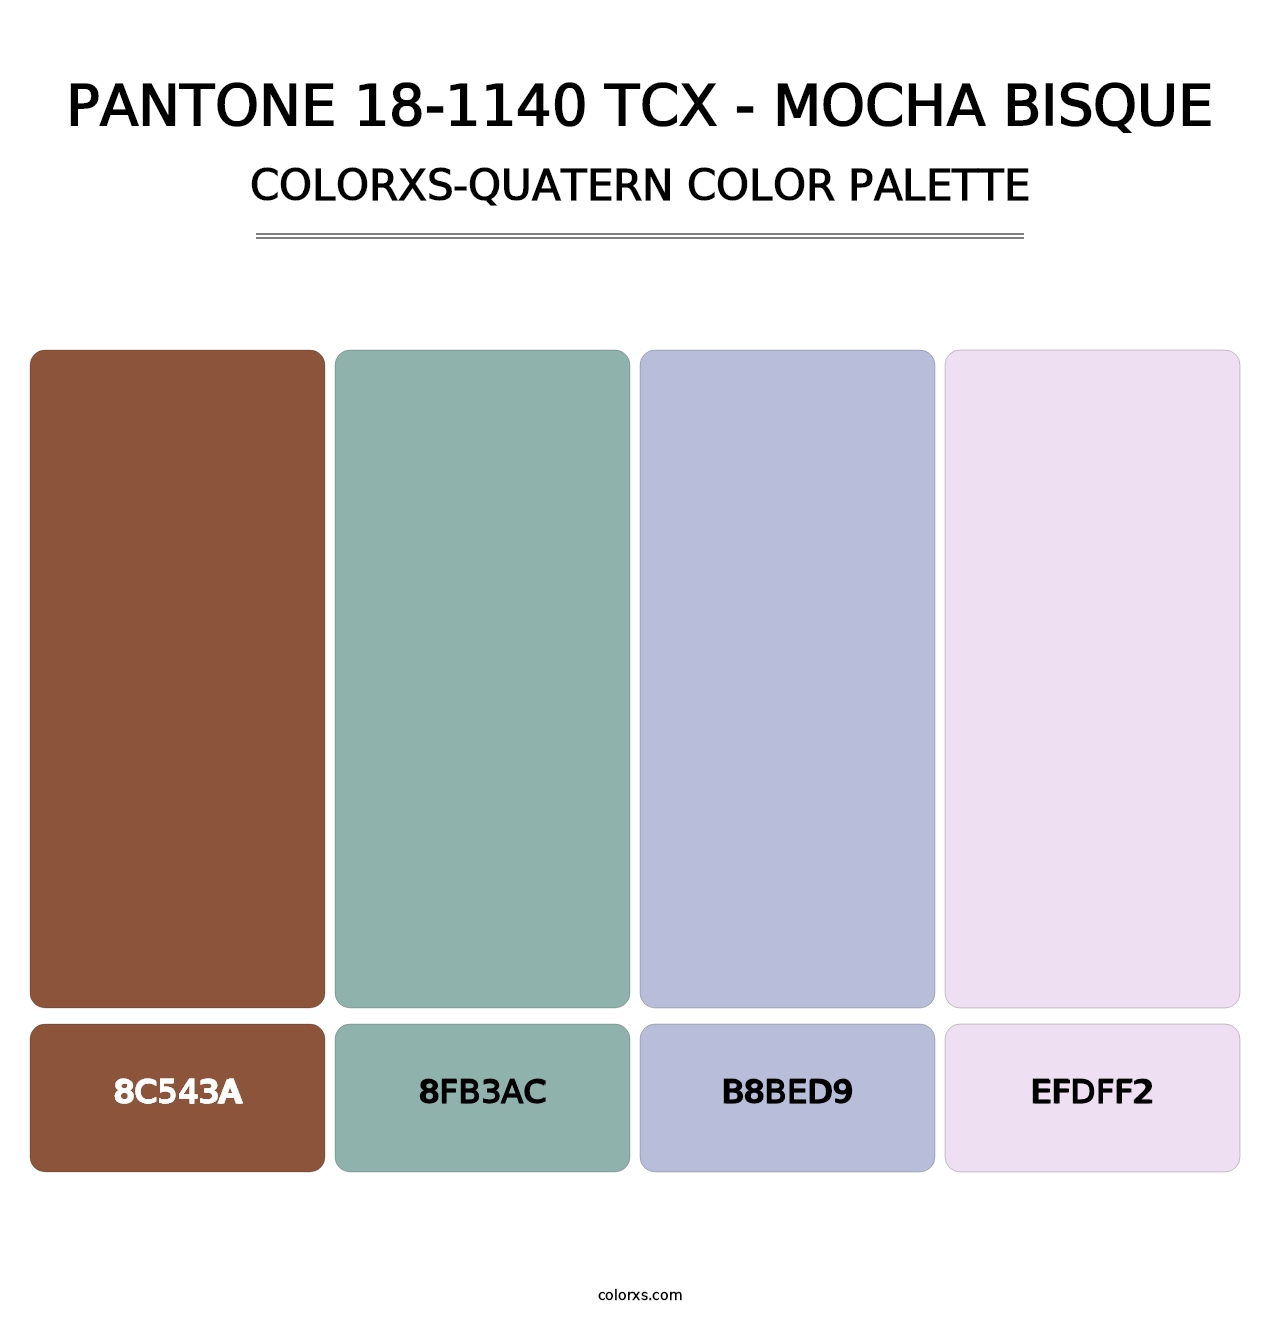 PANTONE 18-1140 TCX - Mocha Bisque - Colorxs Quatern Palette